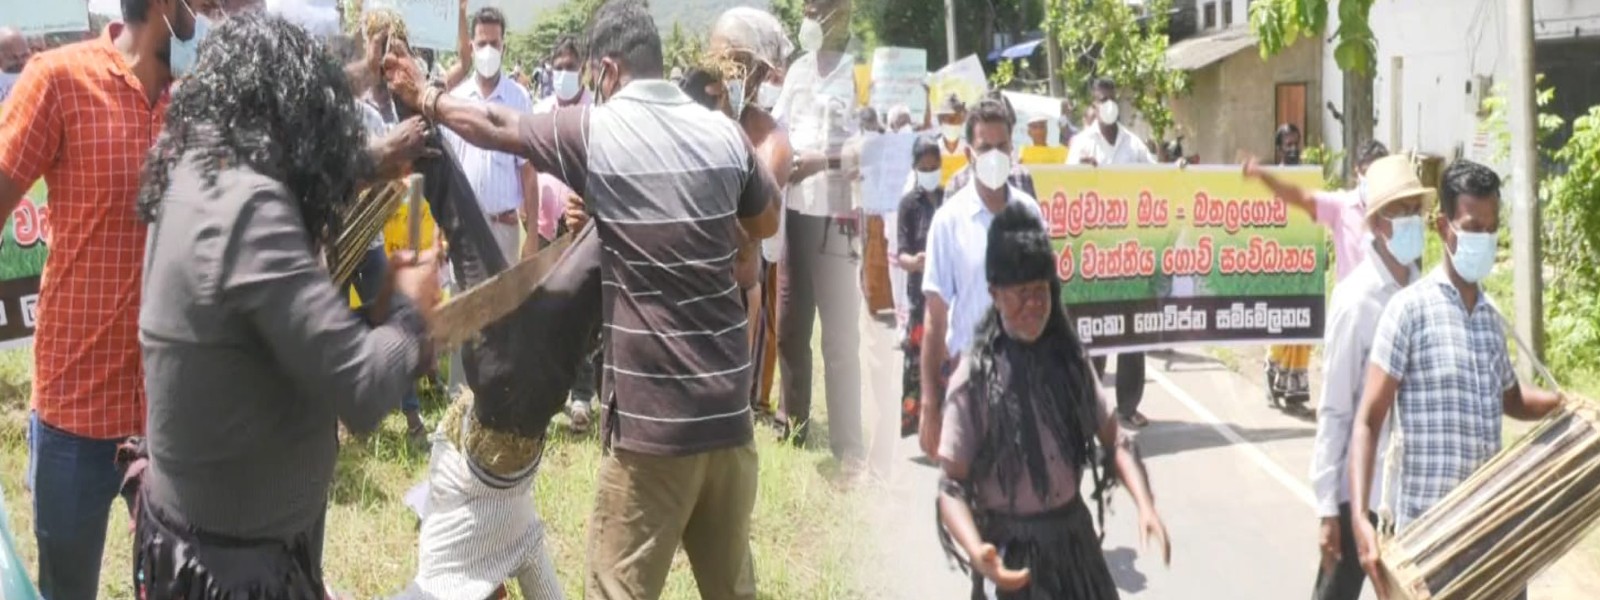 Sri Lanka farmers continue protest over fertilizer shortage – #FarmerProtestSL